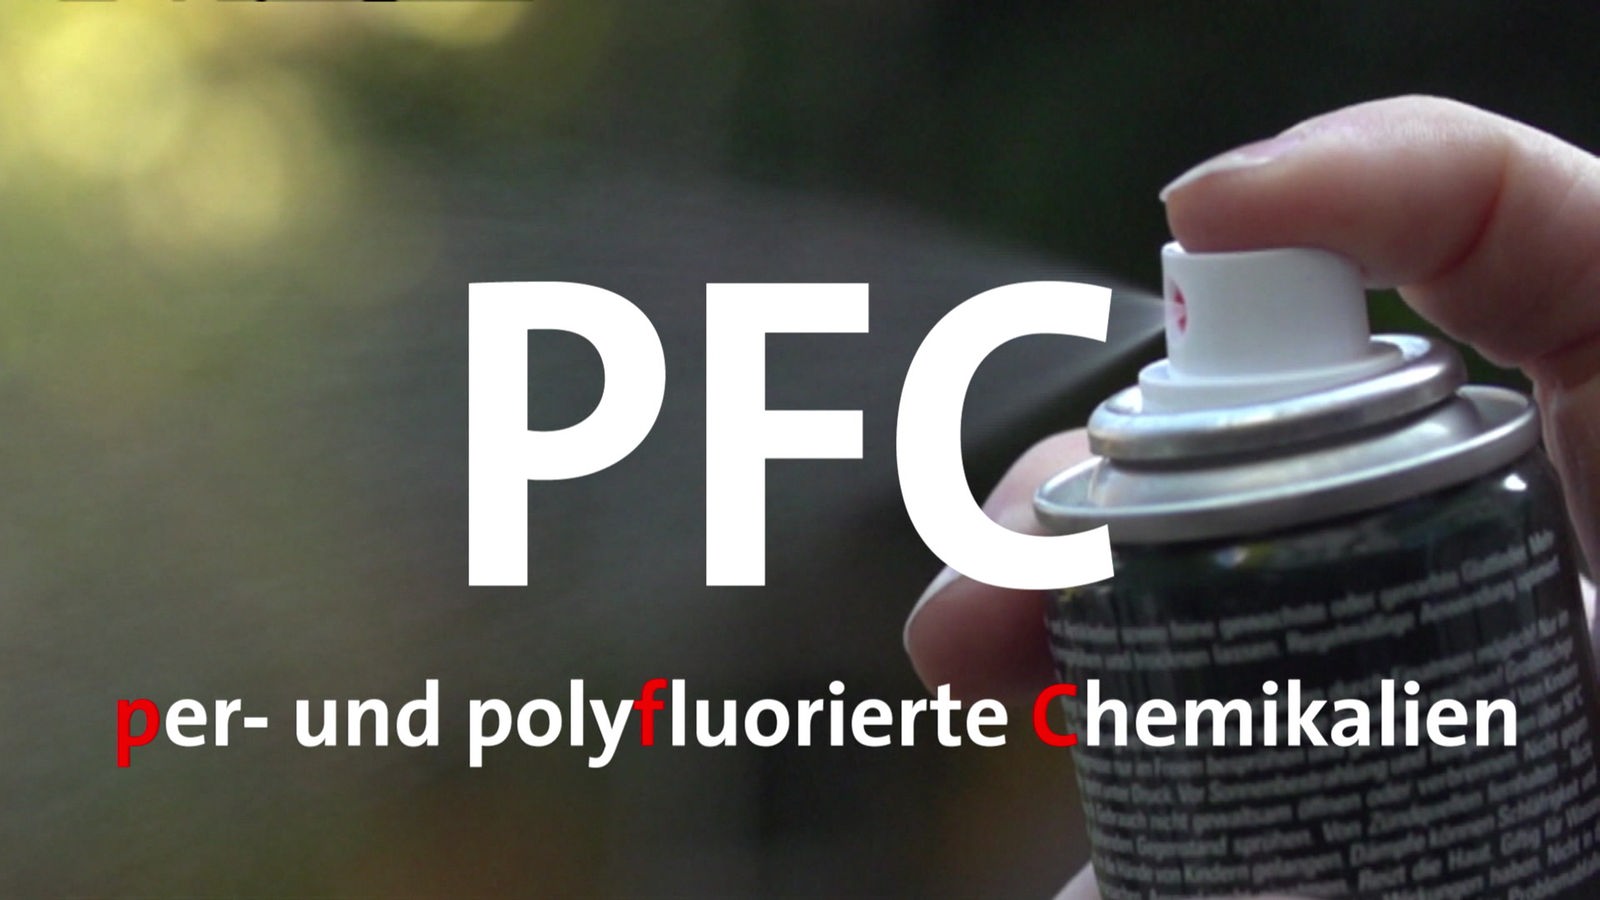 Eine Spraydose versprüht Flüssigkeit, darüber steht 'PFC' und 'per- und polyfluorierte Chemikalien'.